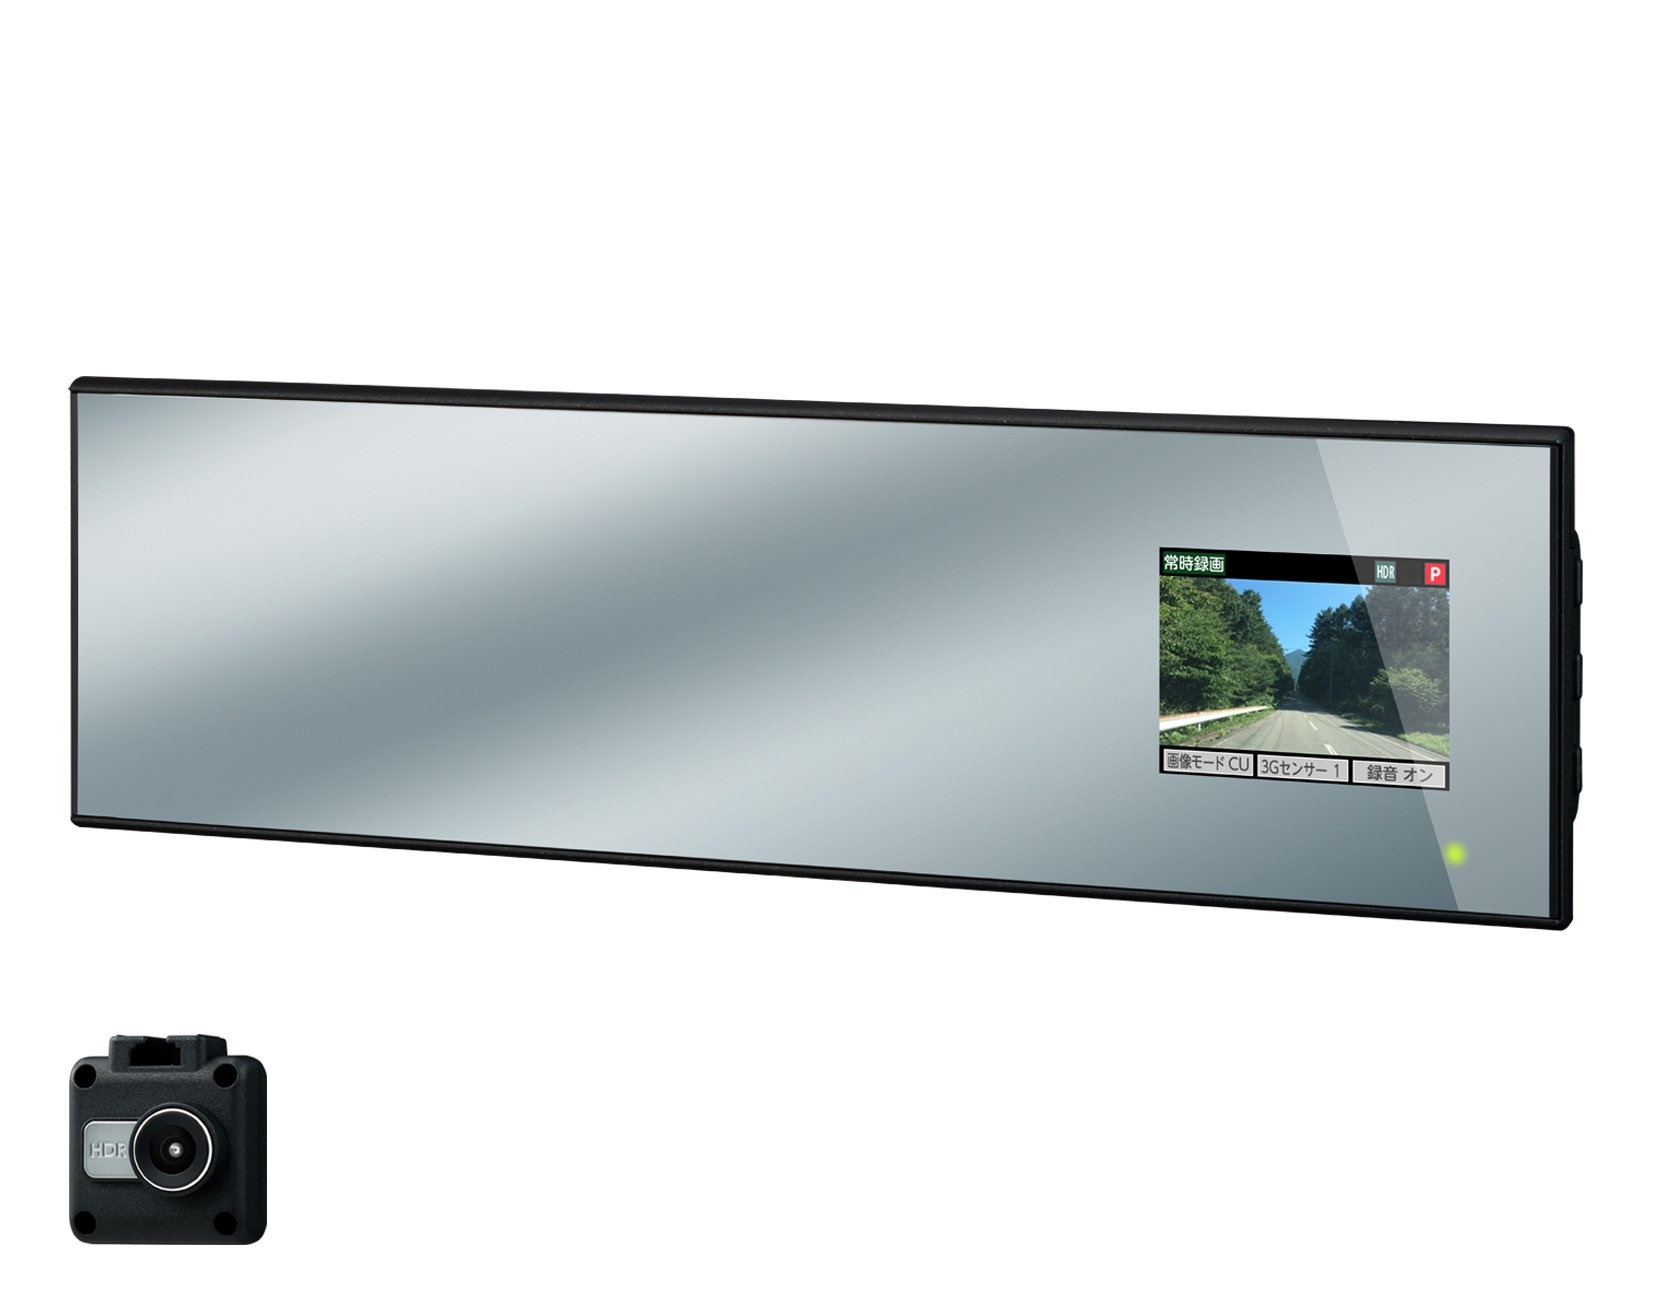 セルスター ドライブレコーダー ミラー型 1カメラ CSD-620FH 200万画素 FullHD HDR SONY Exmor CMOSセンサー 2.4インチ microSD(16GB)付 駐車監視機能 日本製 3年保証 CELLSTAR